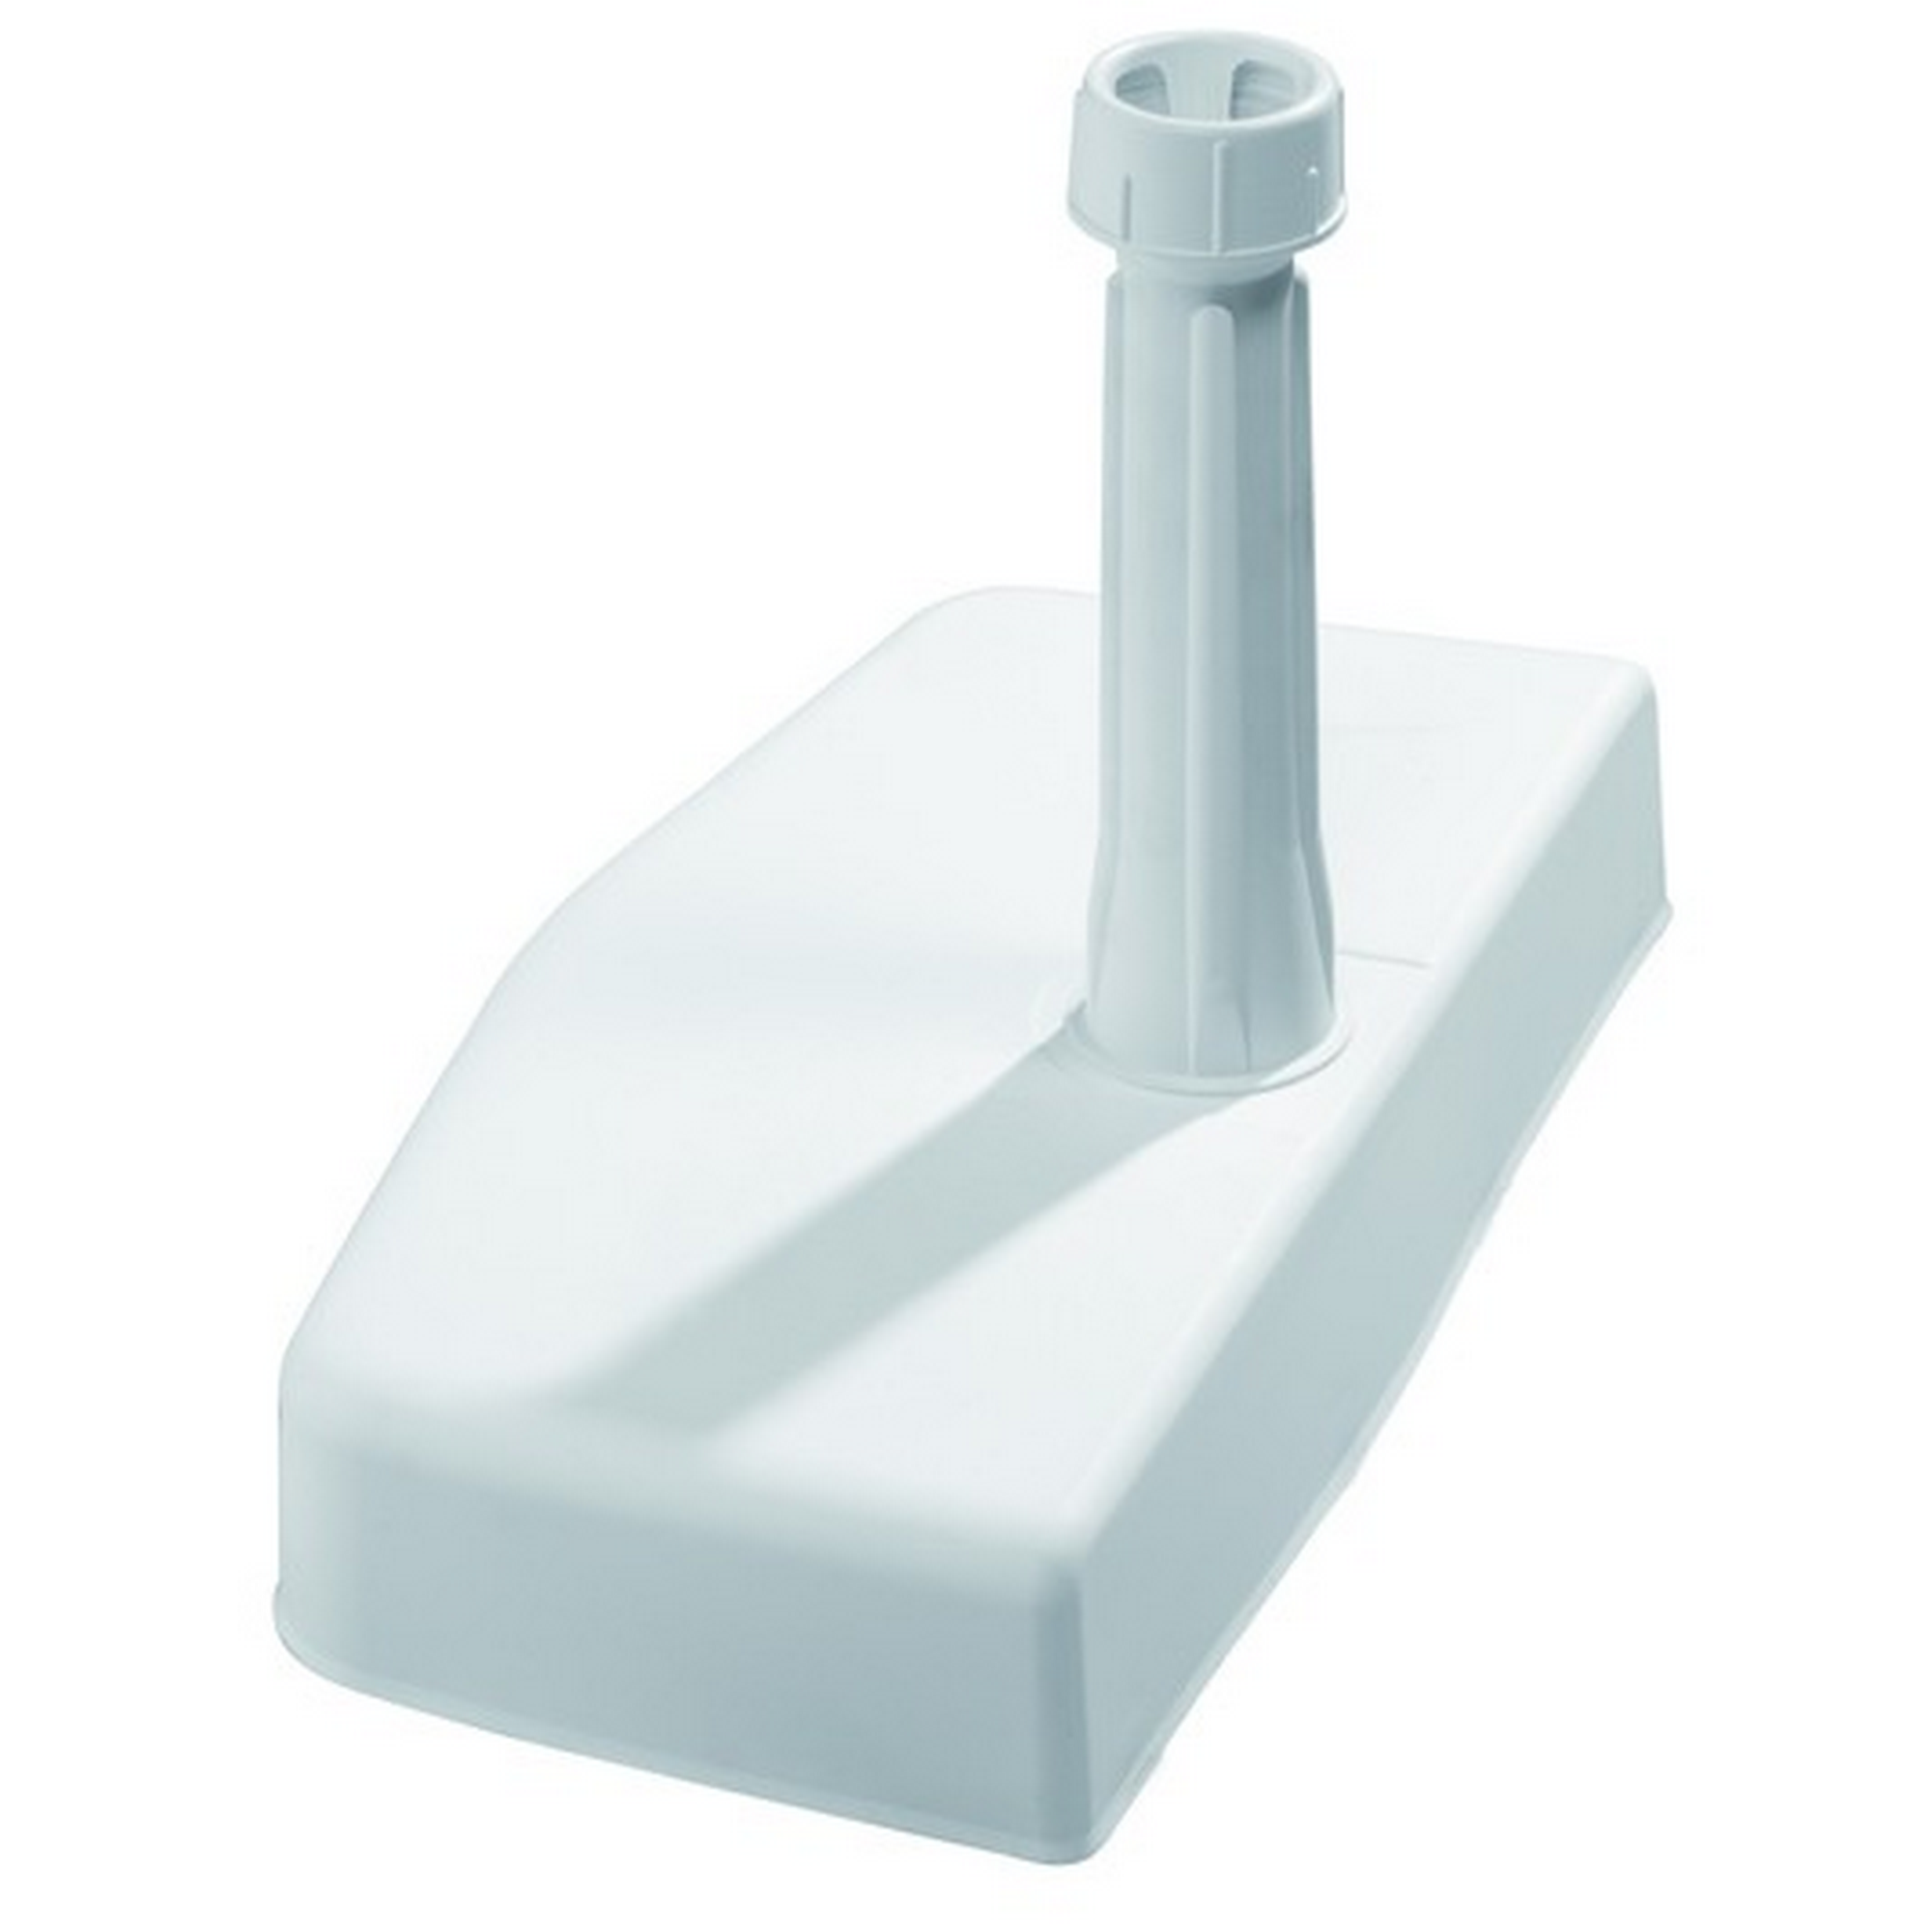 Beton-Balkonschirmständer weiß 20 kg, für Stöcke bis Ø 32 mm + product picture